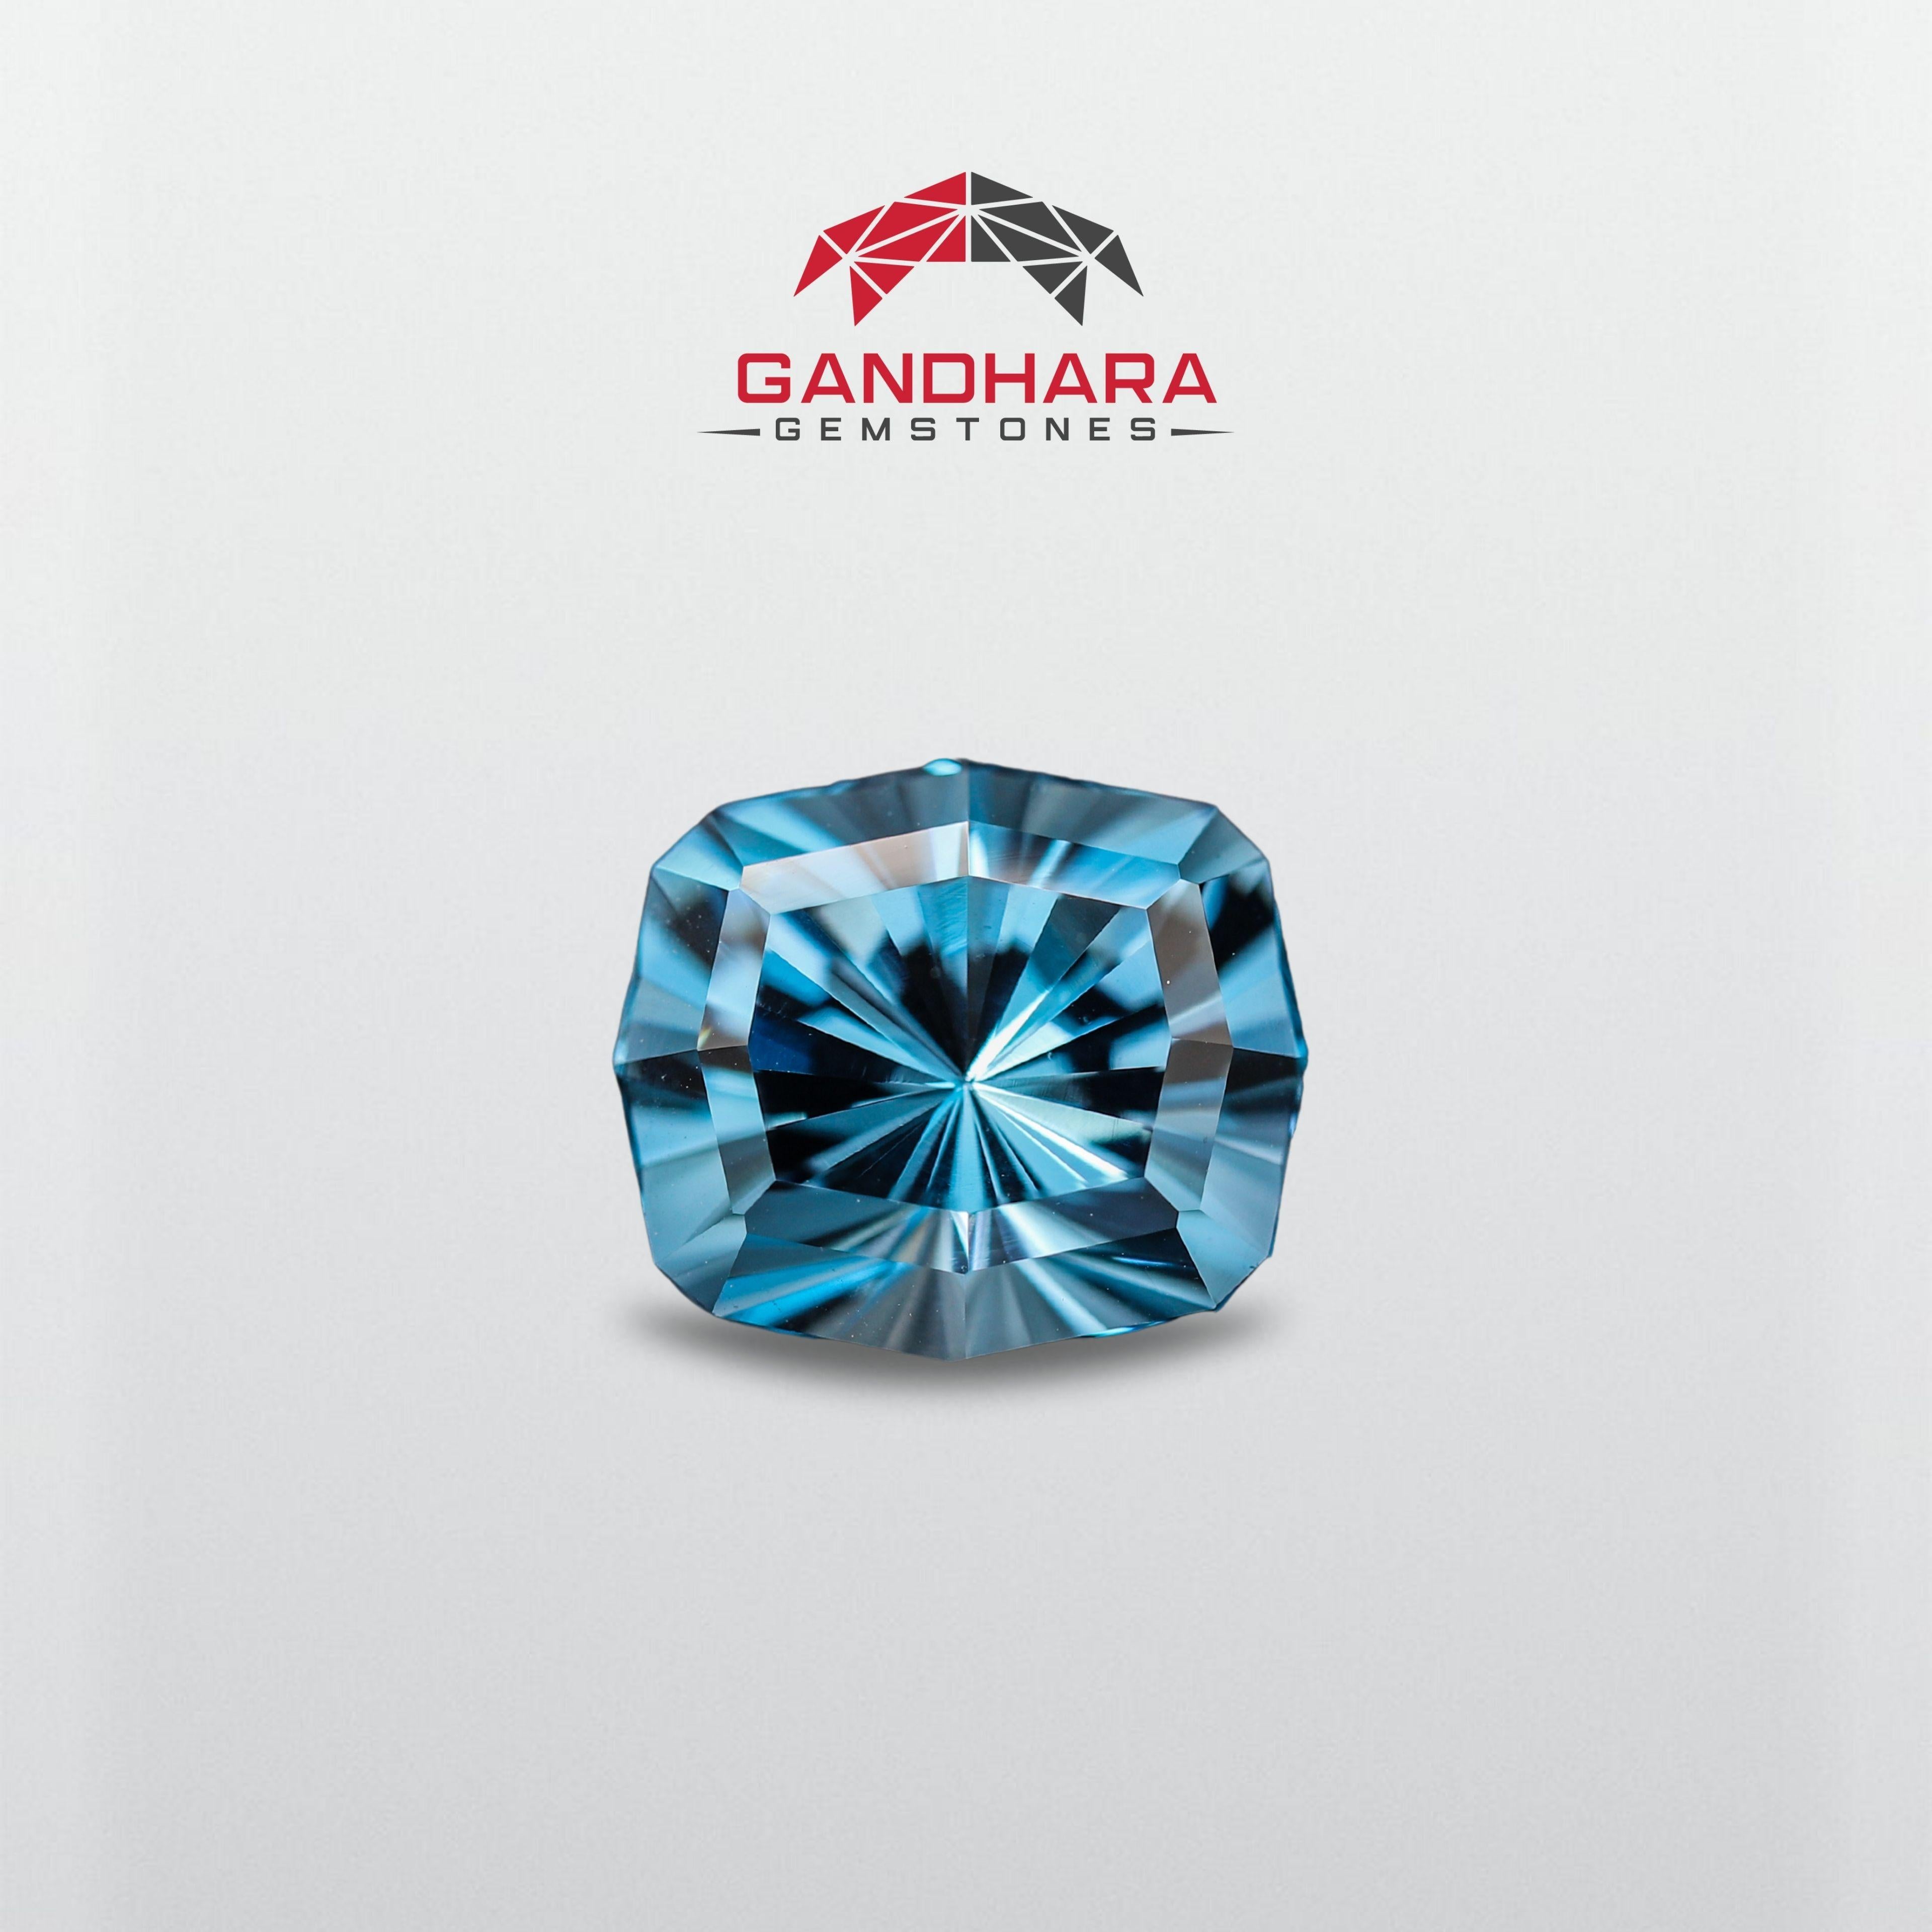 La topaze est une pierre précieuse semi-précieuse d'un bleu intense, issue de la famille minérale des topazes. Le nom Topaze vient du mot sanskrit 